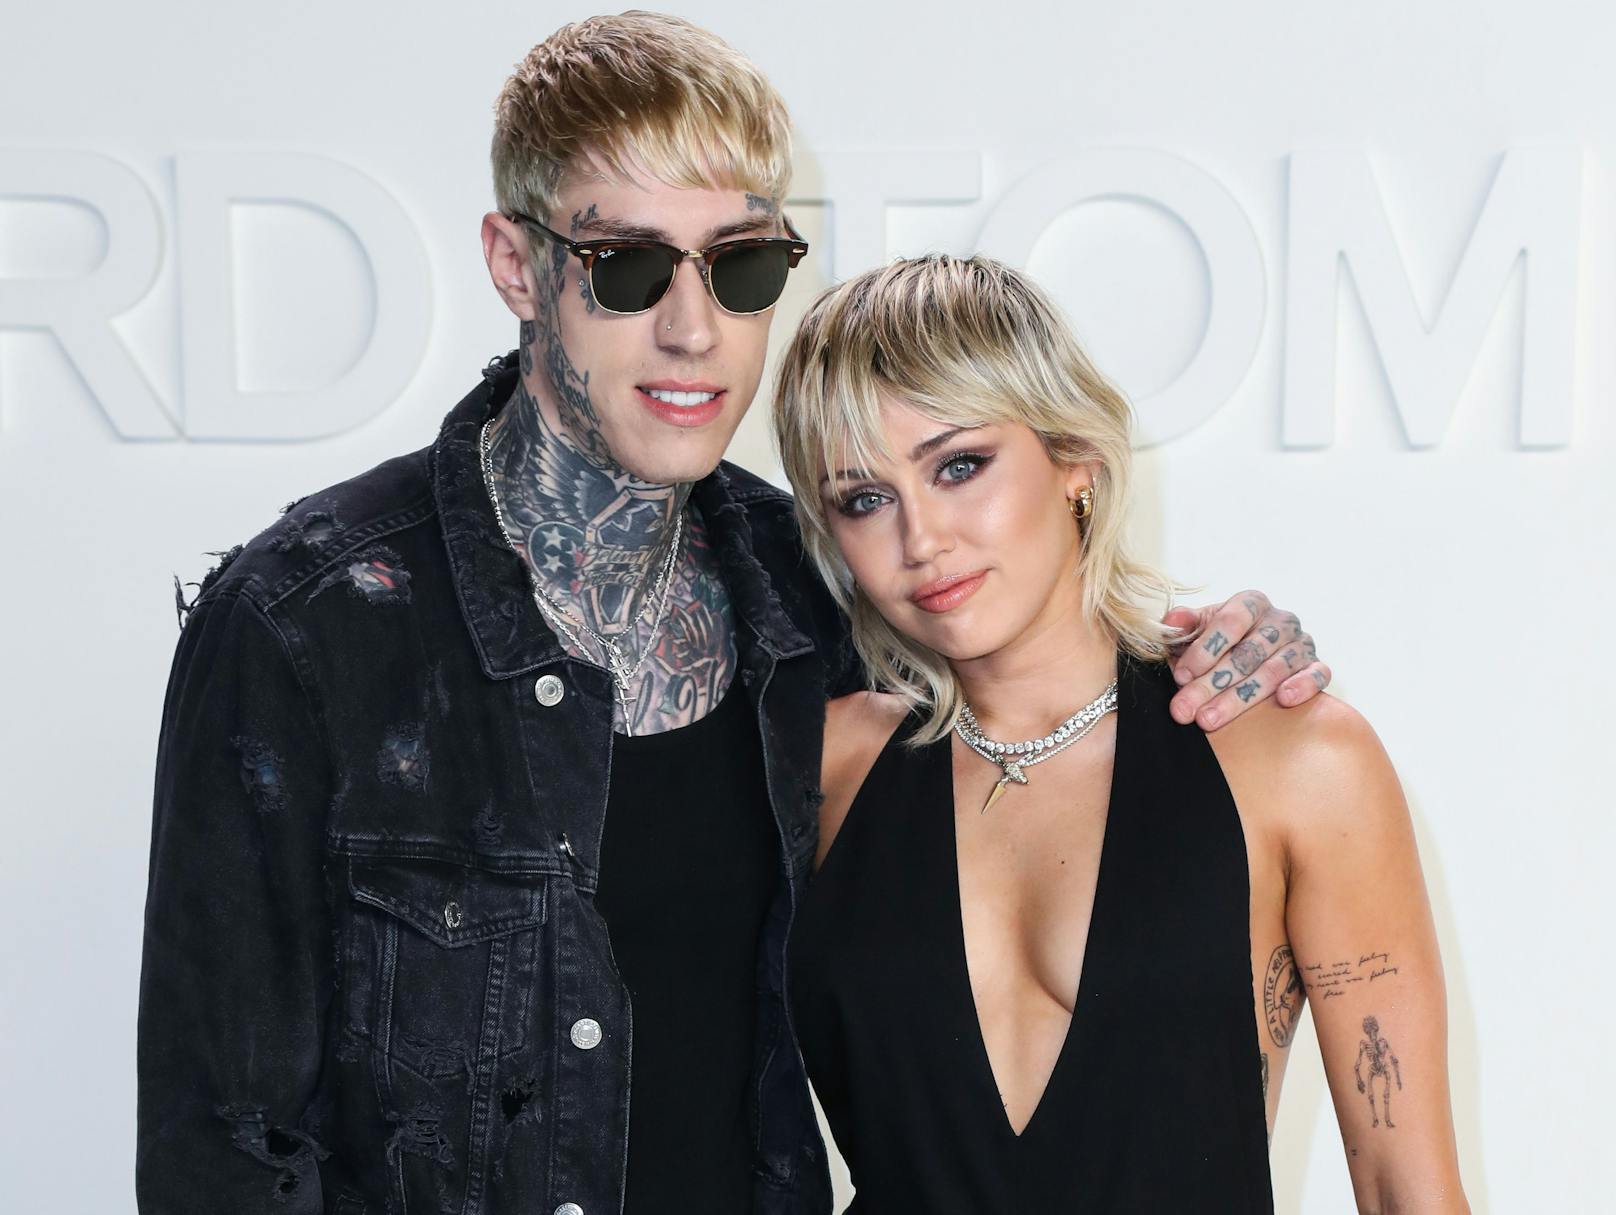 Mileys Bruder <strong>Trace</strong>&nbsp;(li.) teilt nicht nur ihre Leidenschaft für Tattoos, sondern begleitet seine Schwester auch gerne mal zu Events und über den Roten Teppich.